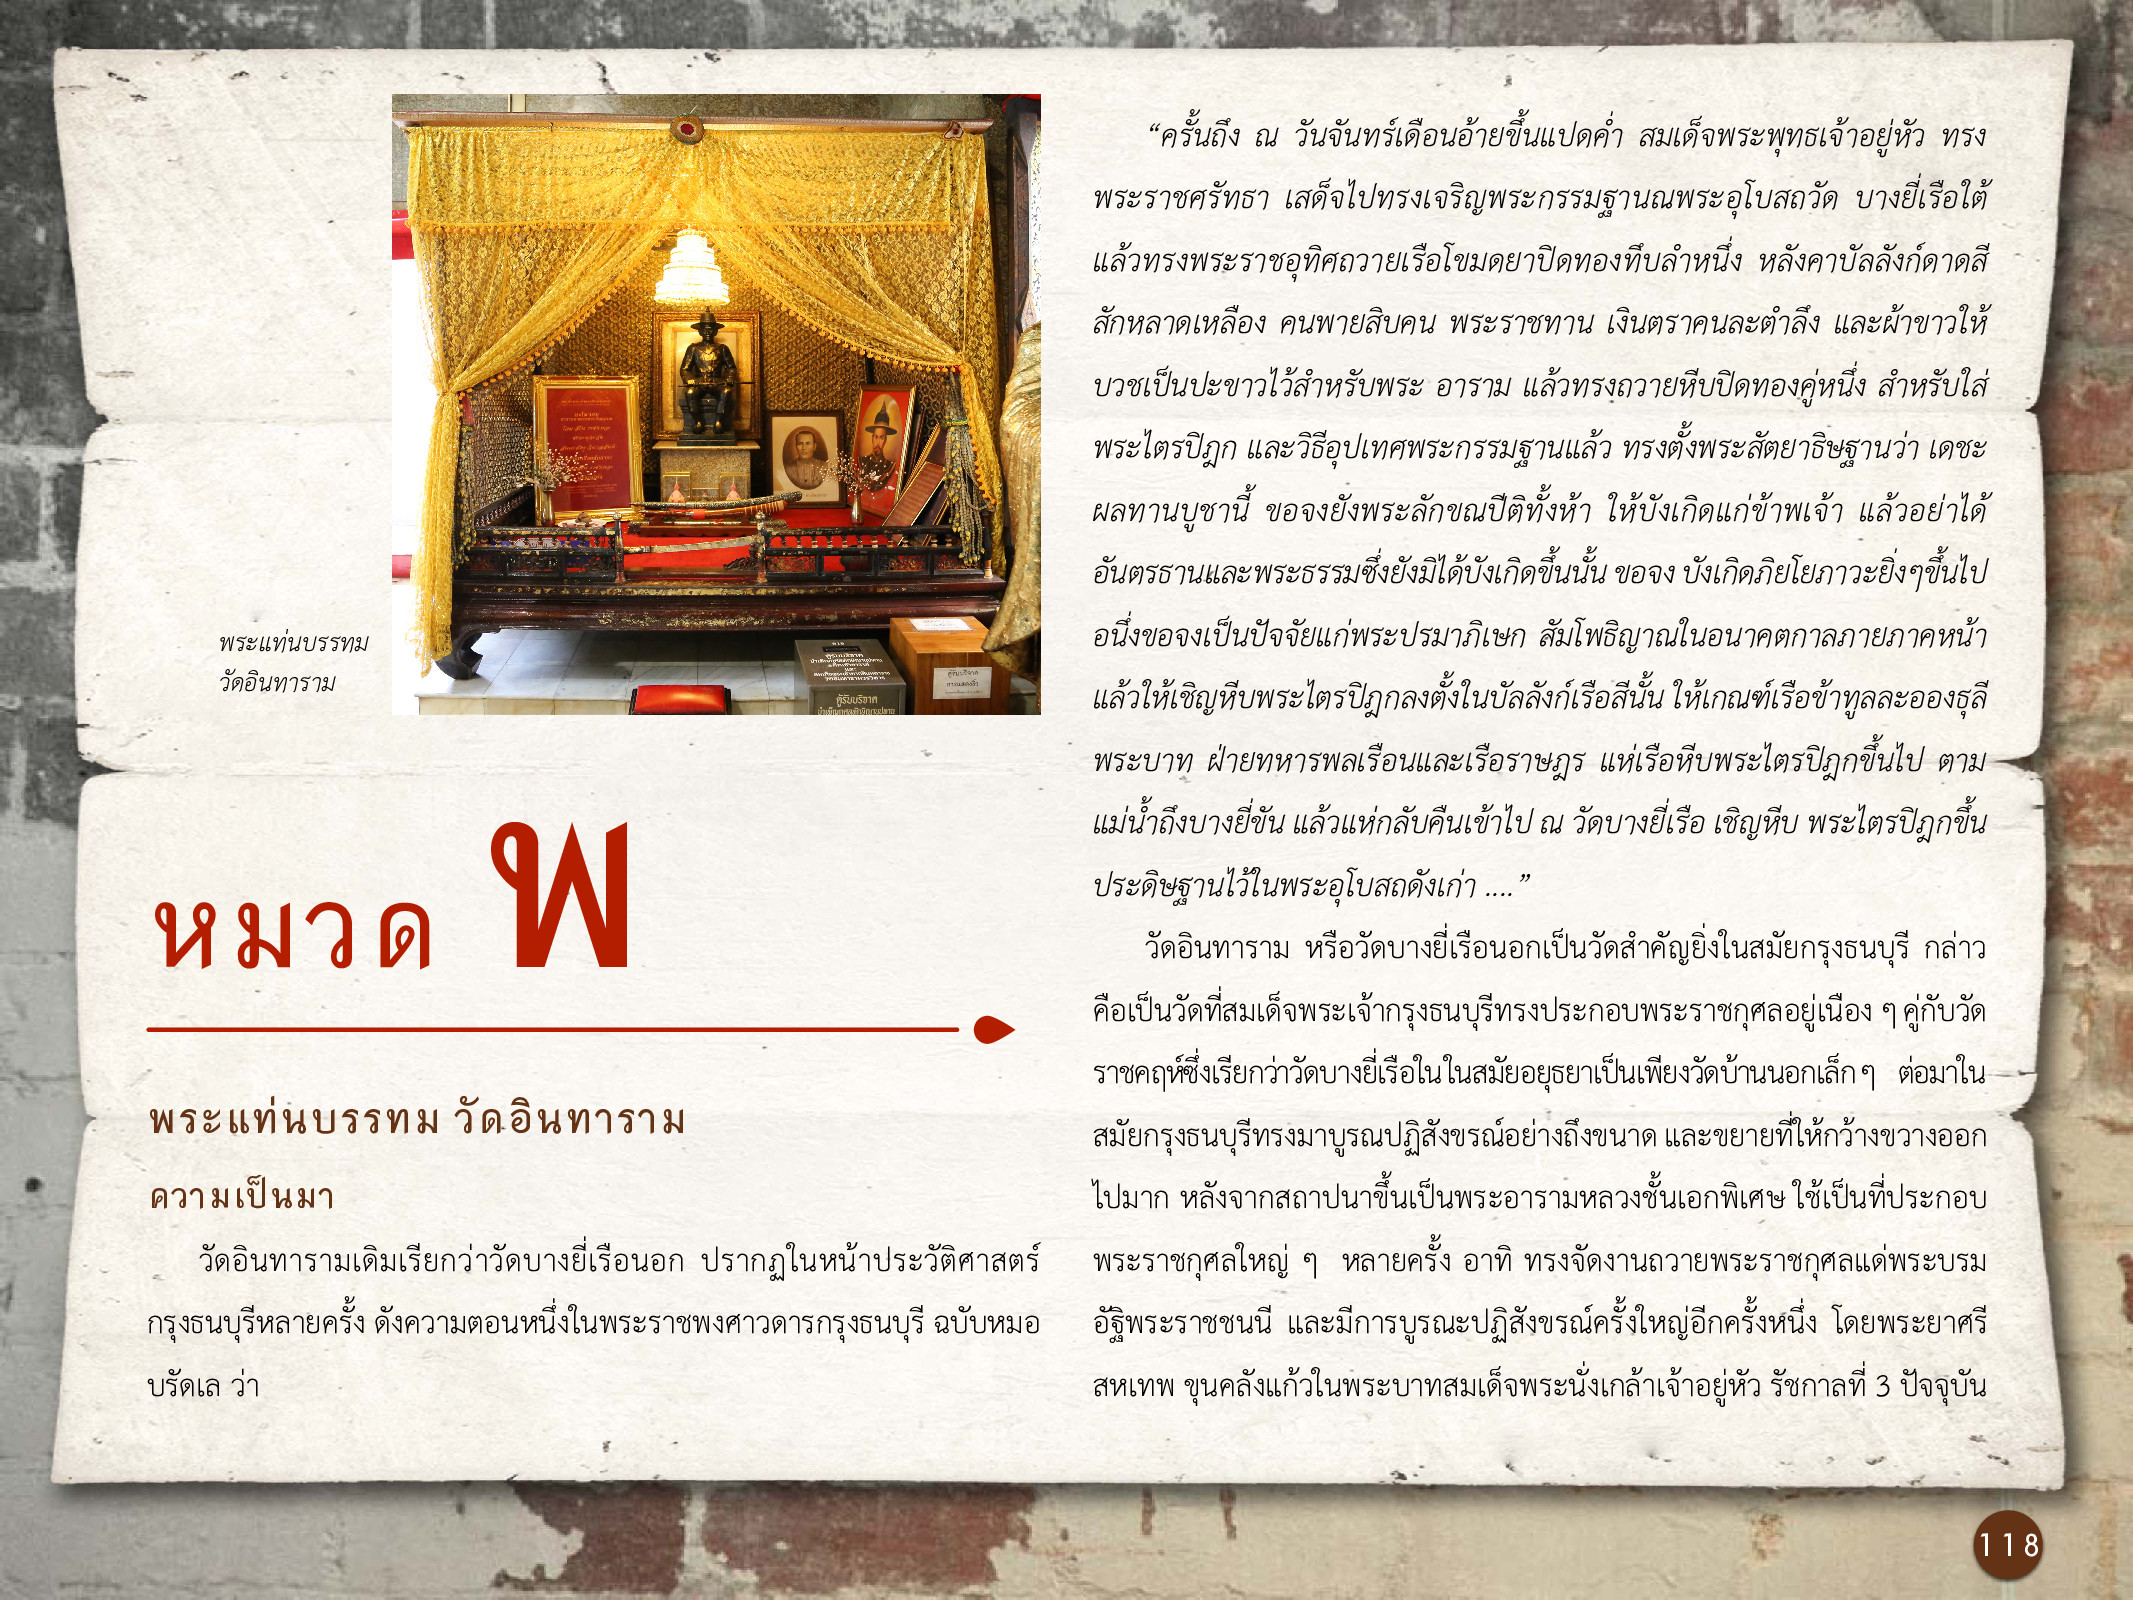 ศิลปกรรมกรุงธนบุรี ./images/encyclopedia/118.jpg